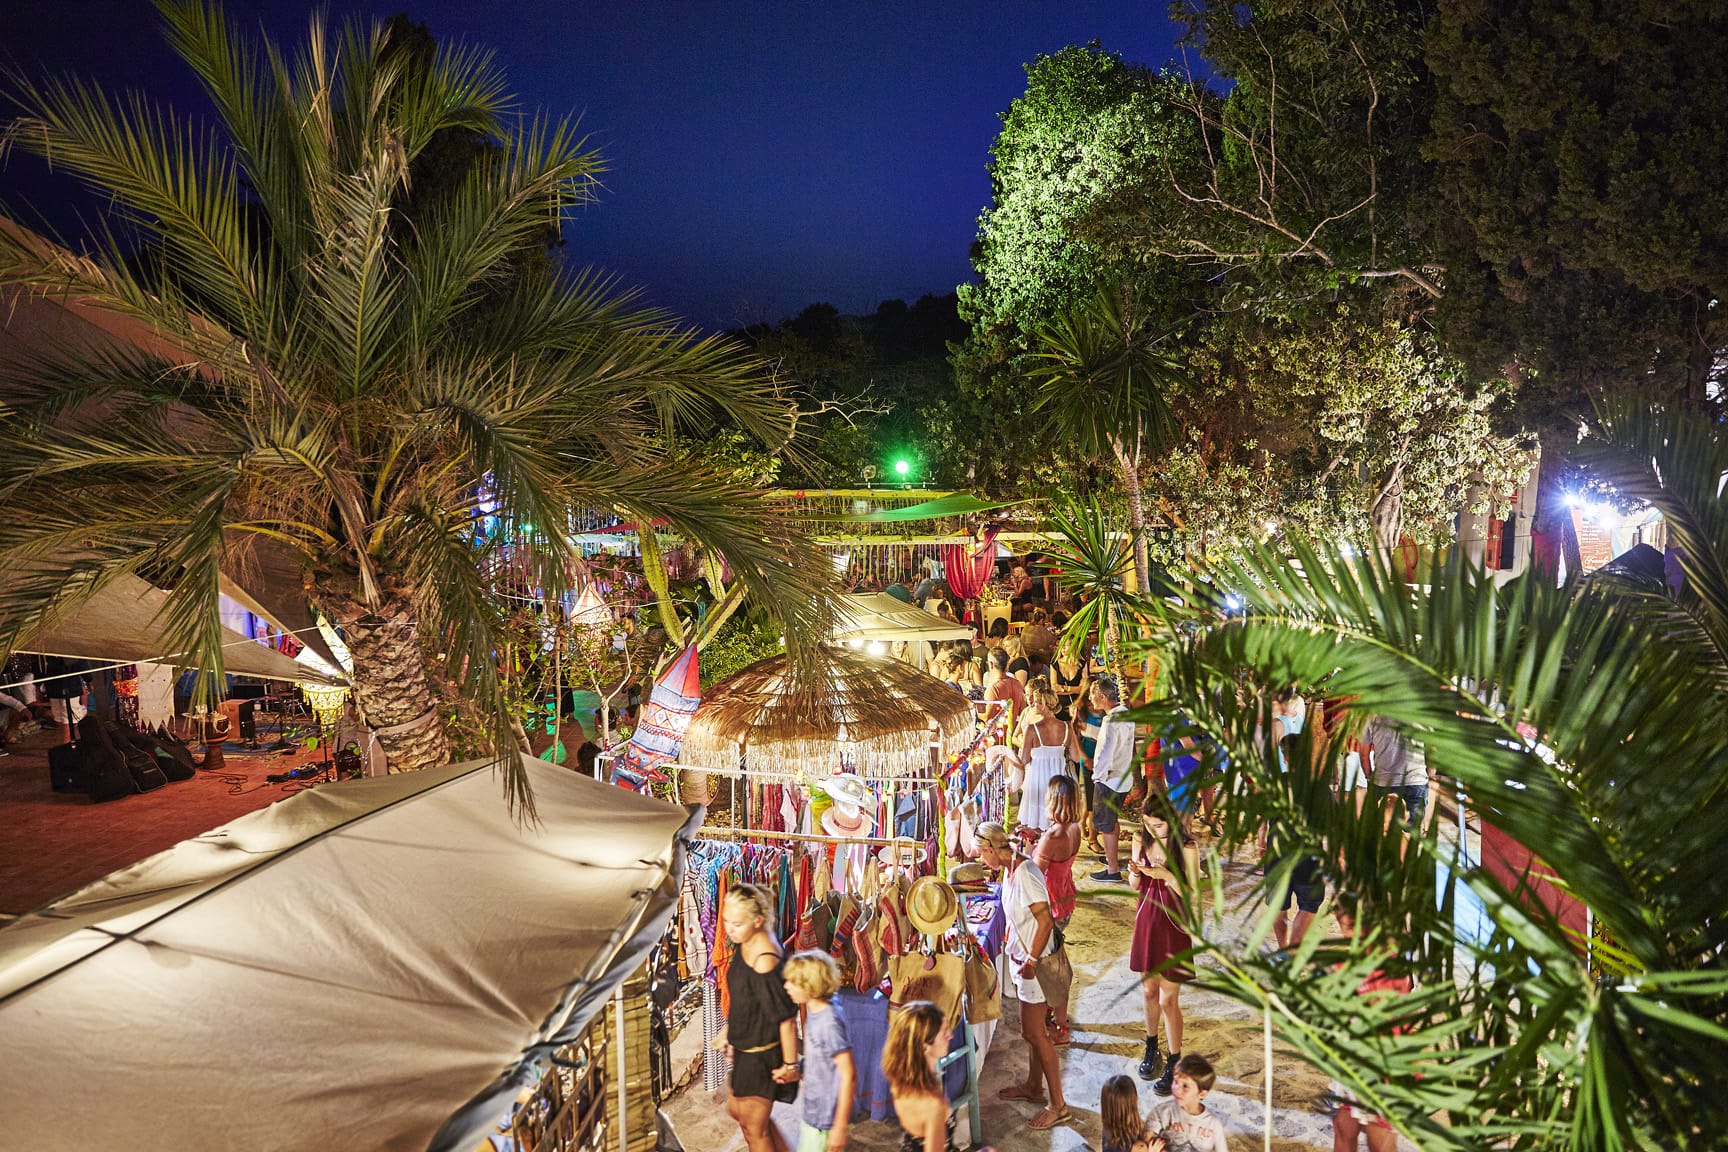 Inside Look: Seven Pines Resort, Ibiza